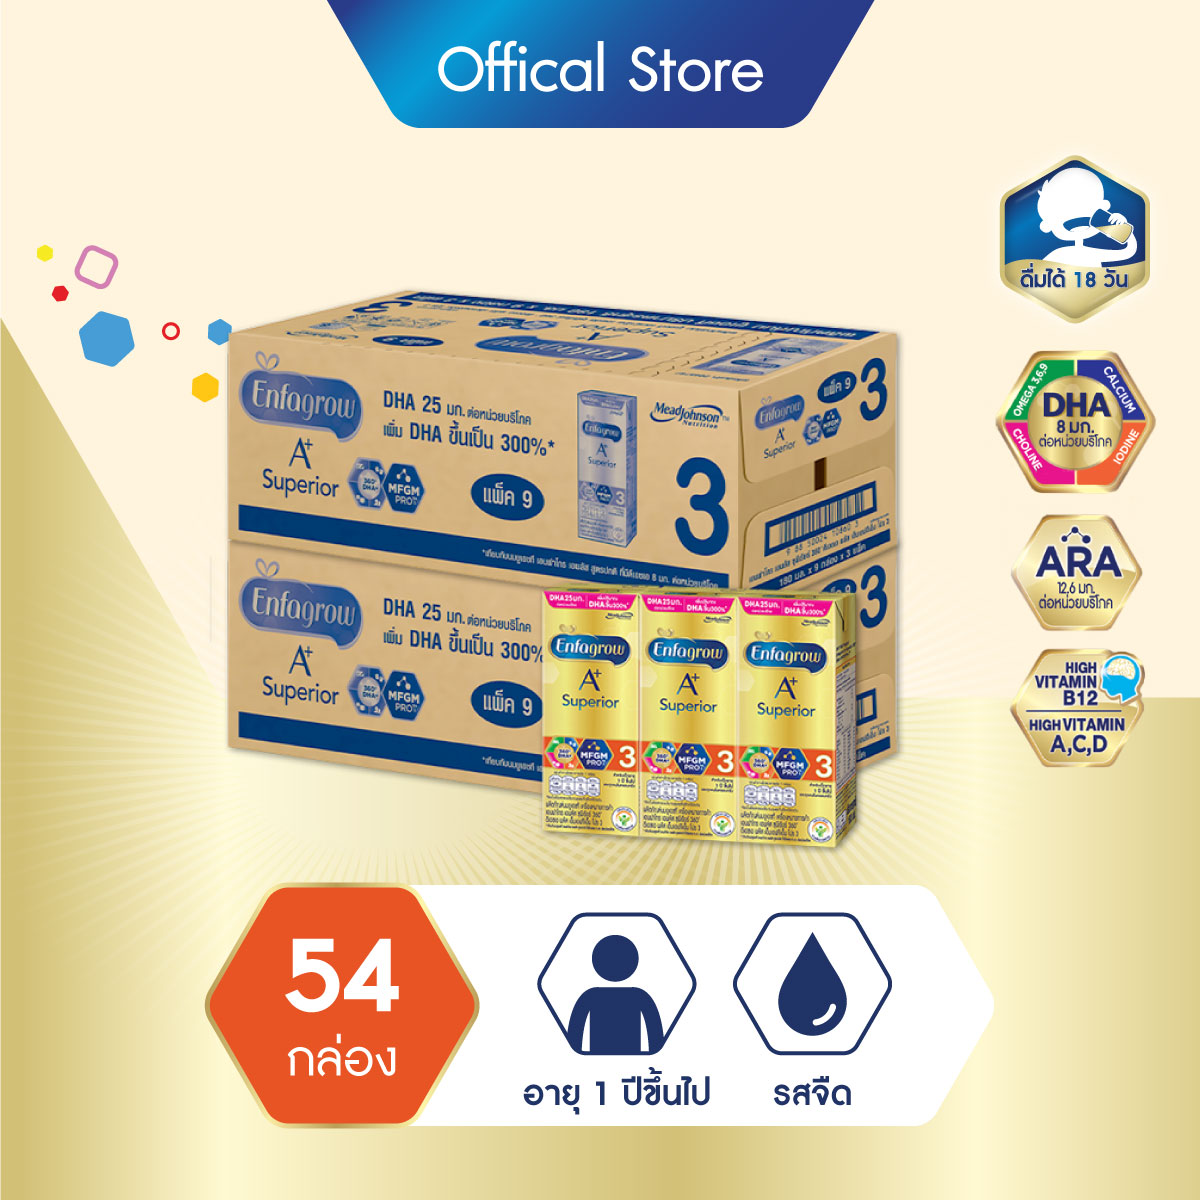 นมยูเอชที เอนฟาโกร เอพลัส สูตร 3 ซุพีเรียร์ รสจืด นมกล่องยกลัง ยูเอชที สำหรับ เด็ก 27 กล่อง จำนวน 2 ลัง Enfagrow A+ Formula 3 Superior plain UHT Milk for Baby Kids Wholesales 27 units 2 cases